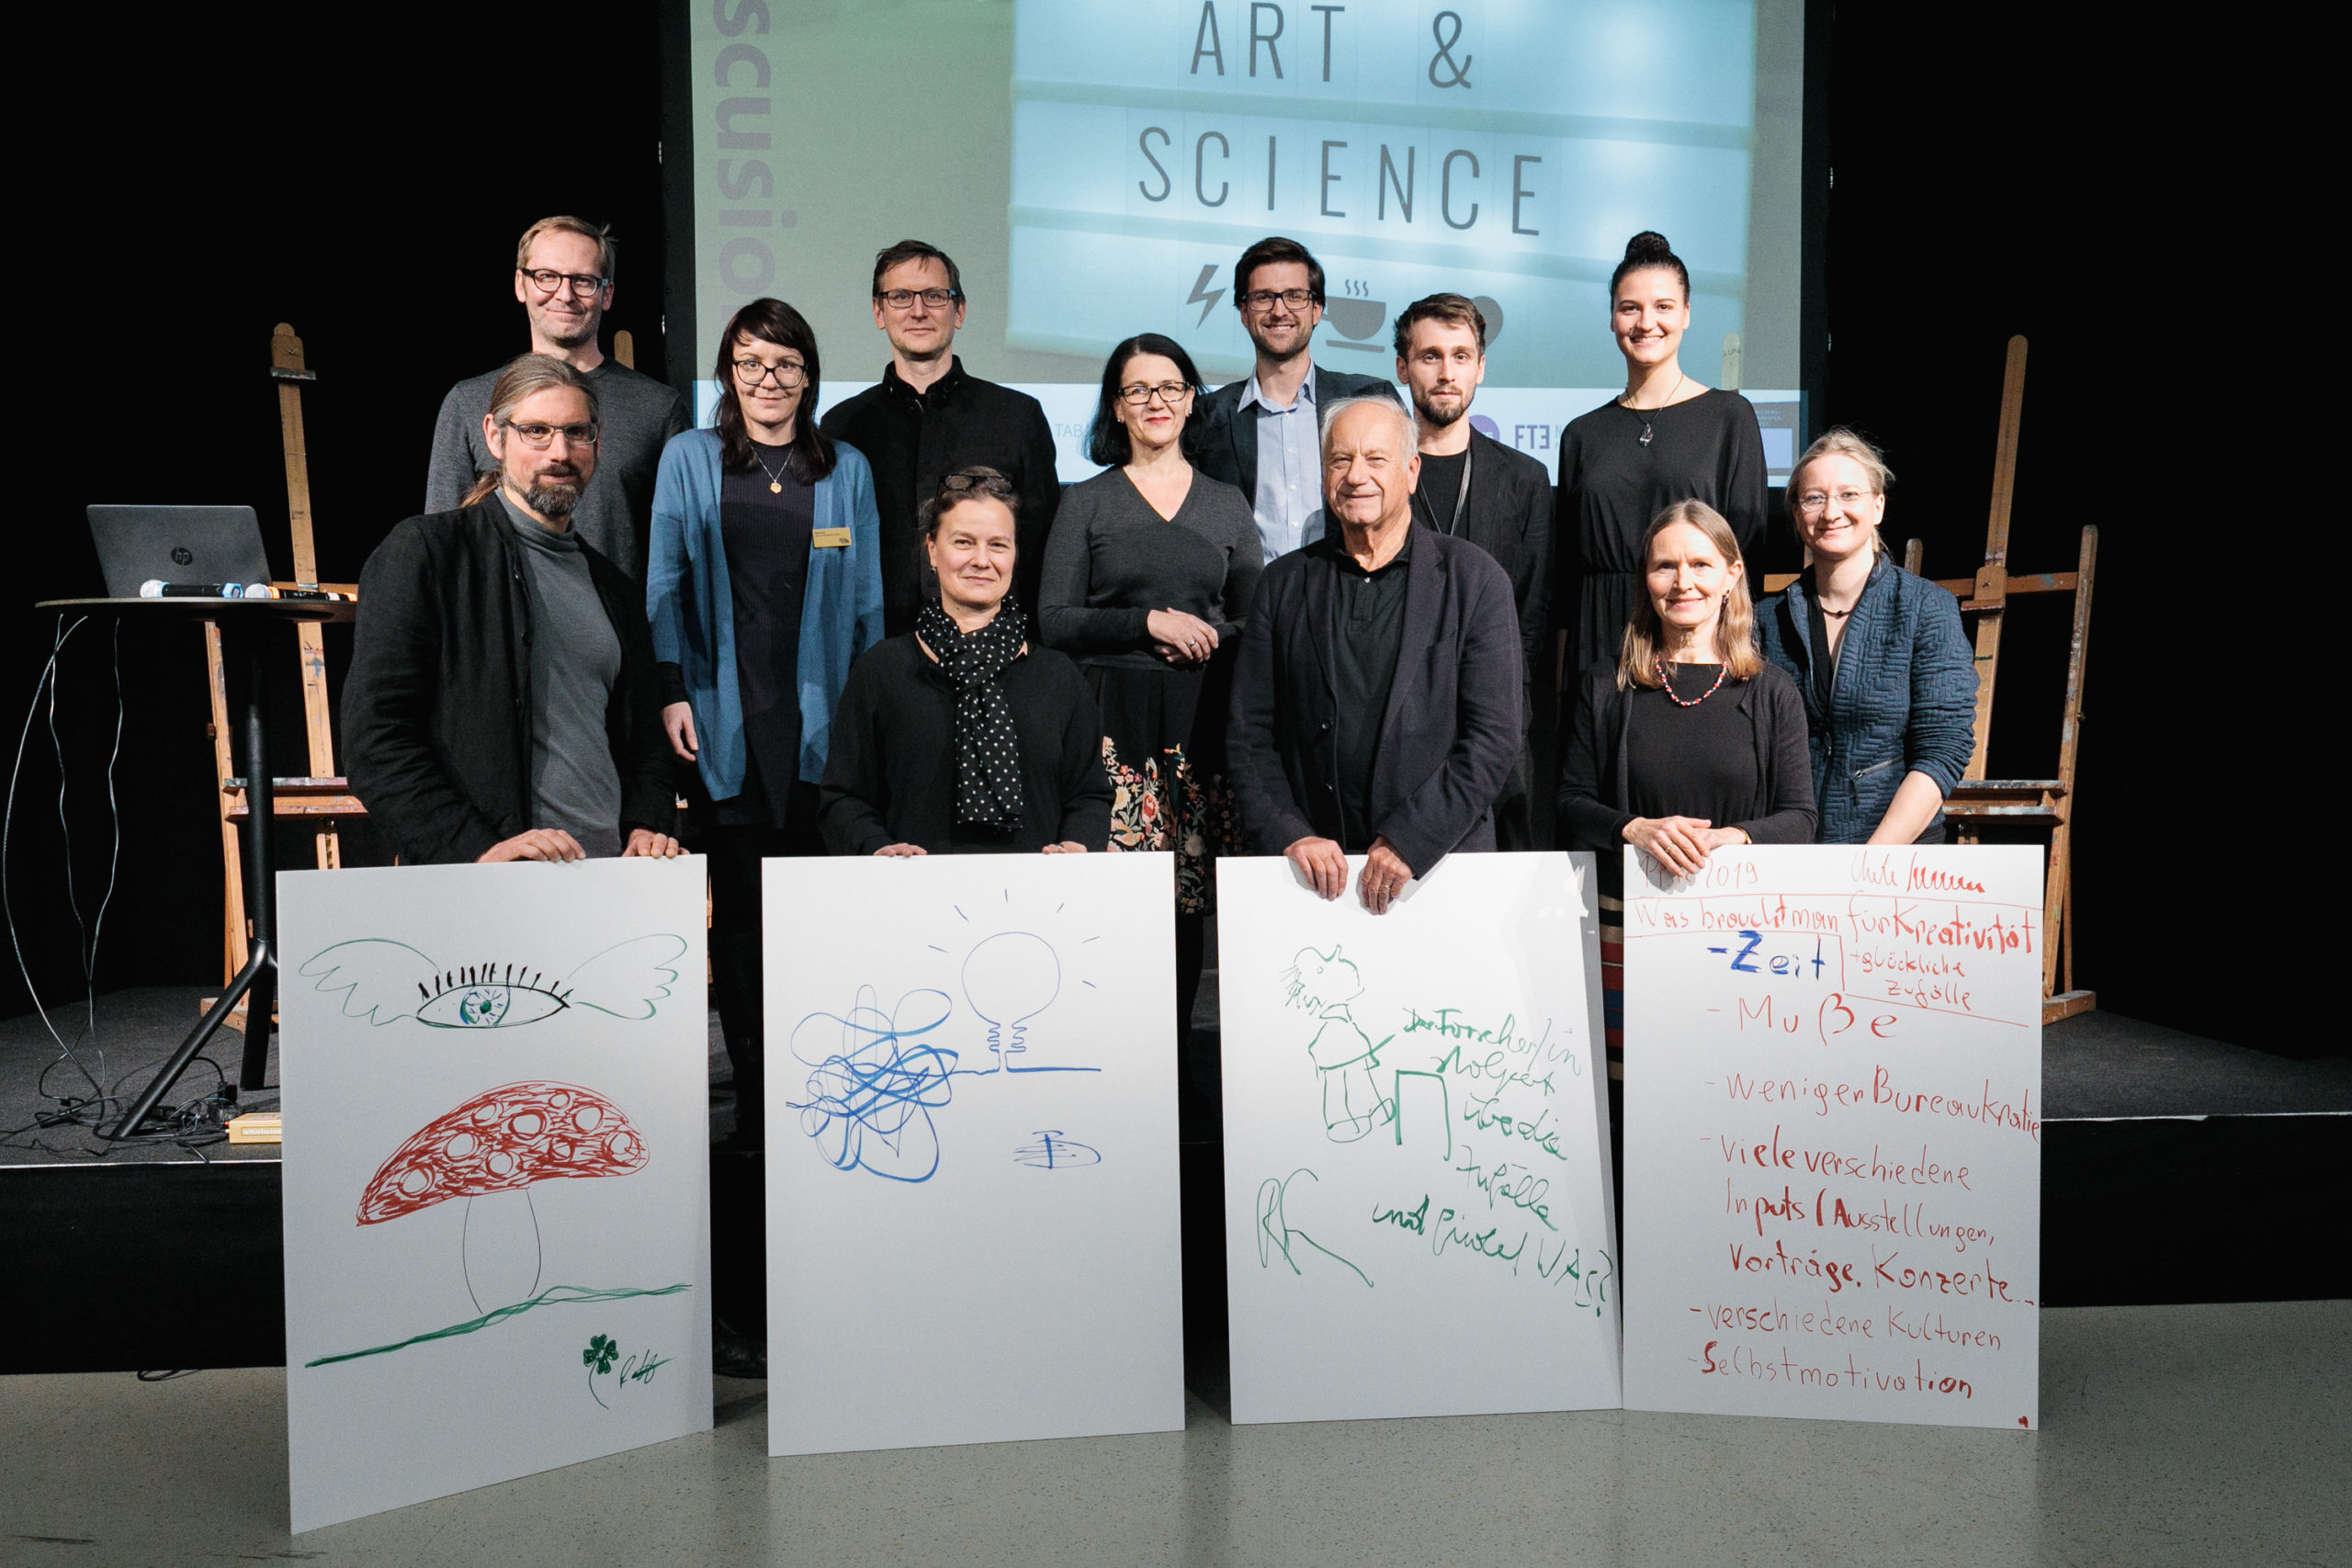 Foto 1: Gruppenfoto der Speaker*innen und des Organisationsteams von Crossing Art & Science No.3, Foto: vog.photo